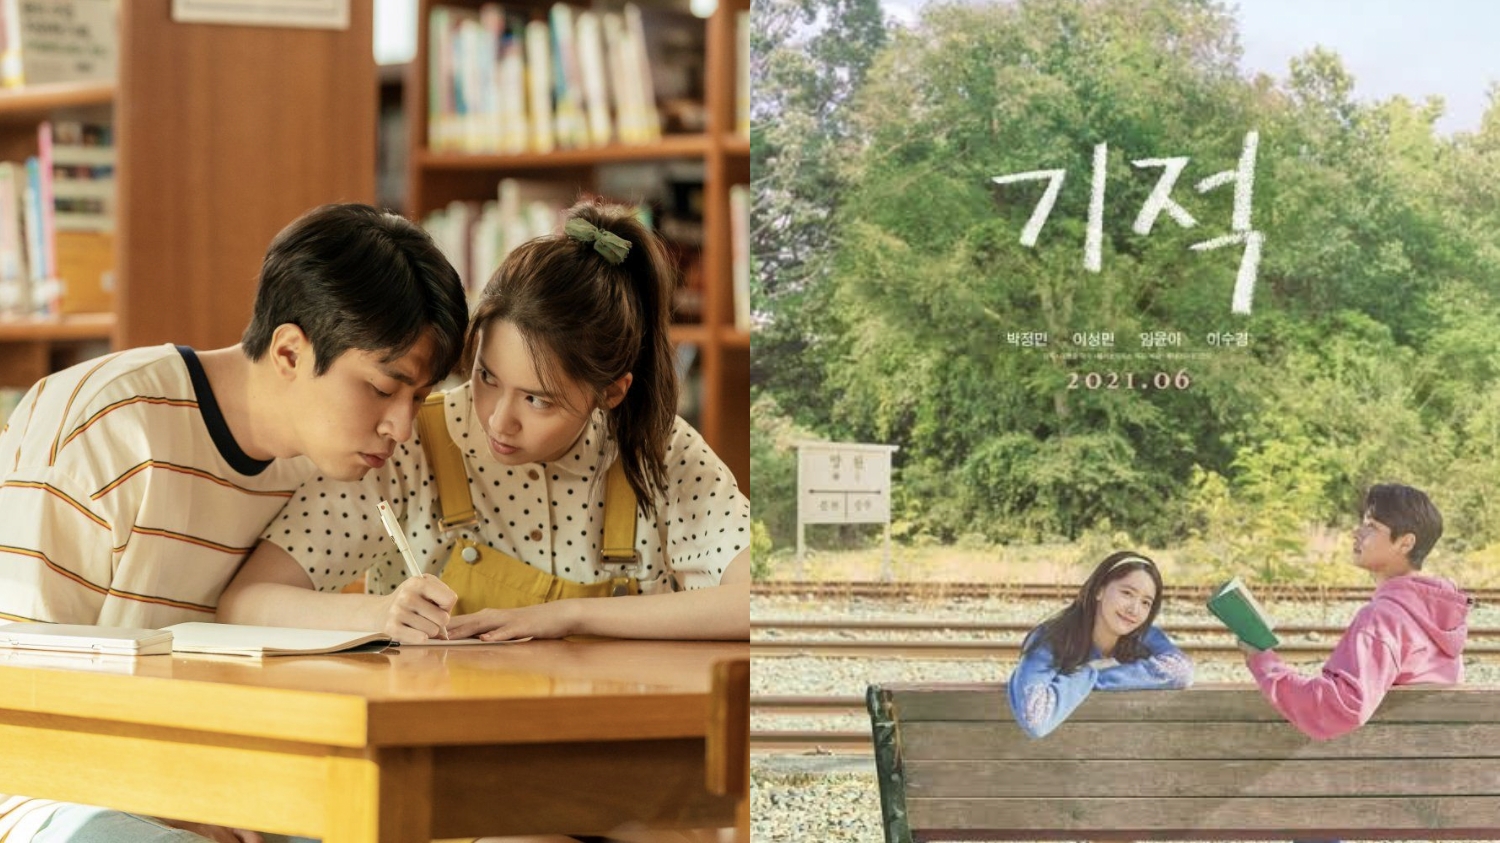 Sinopsis Film Miracle, Dibintangi Yoona SNSD dan Park Jung Min